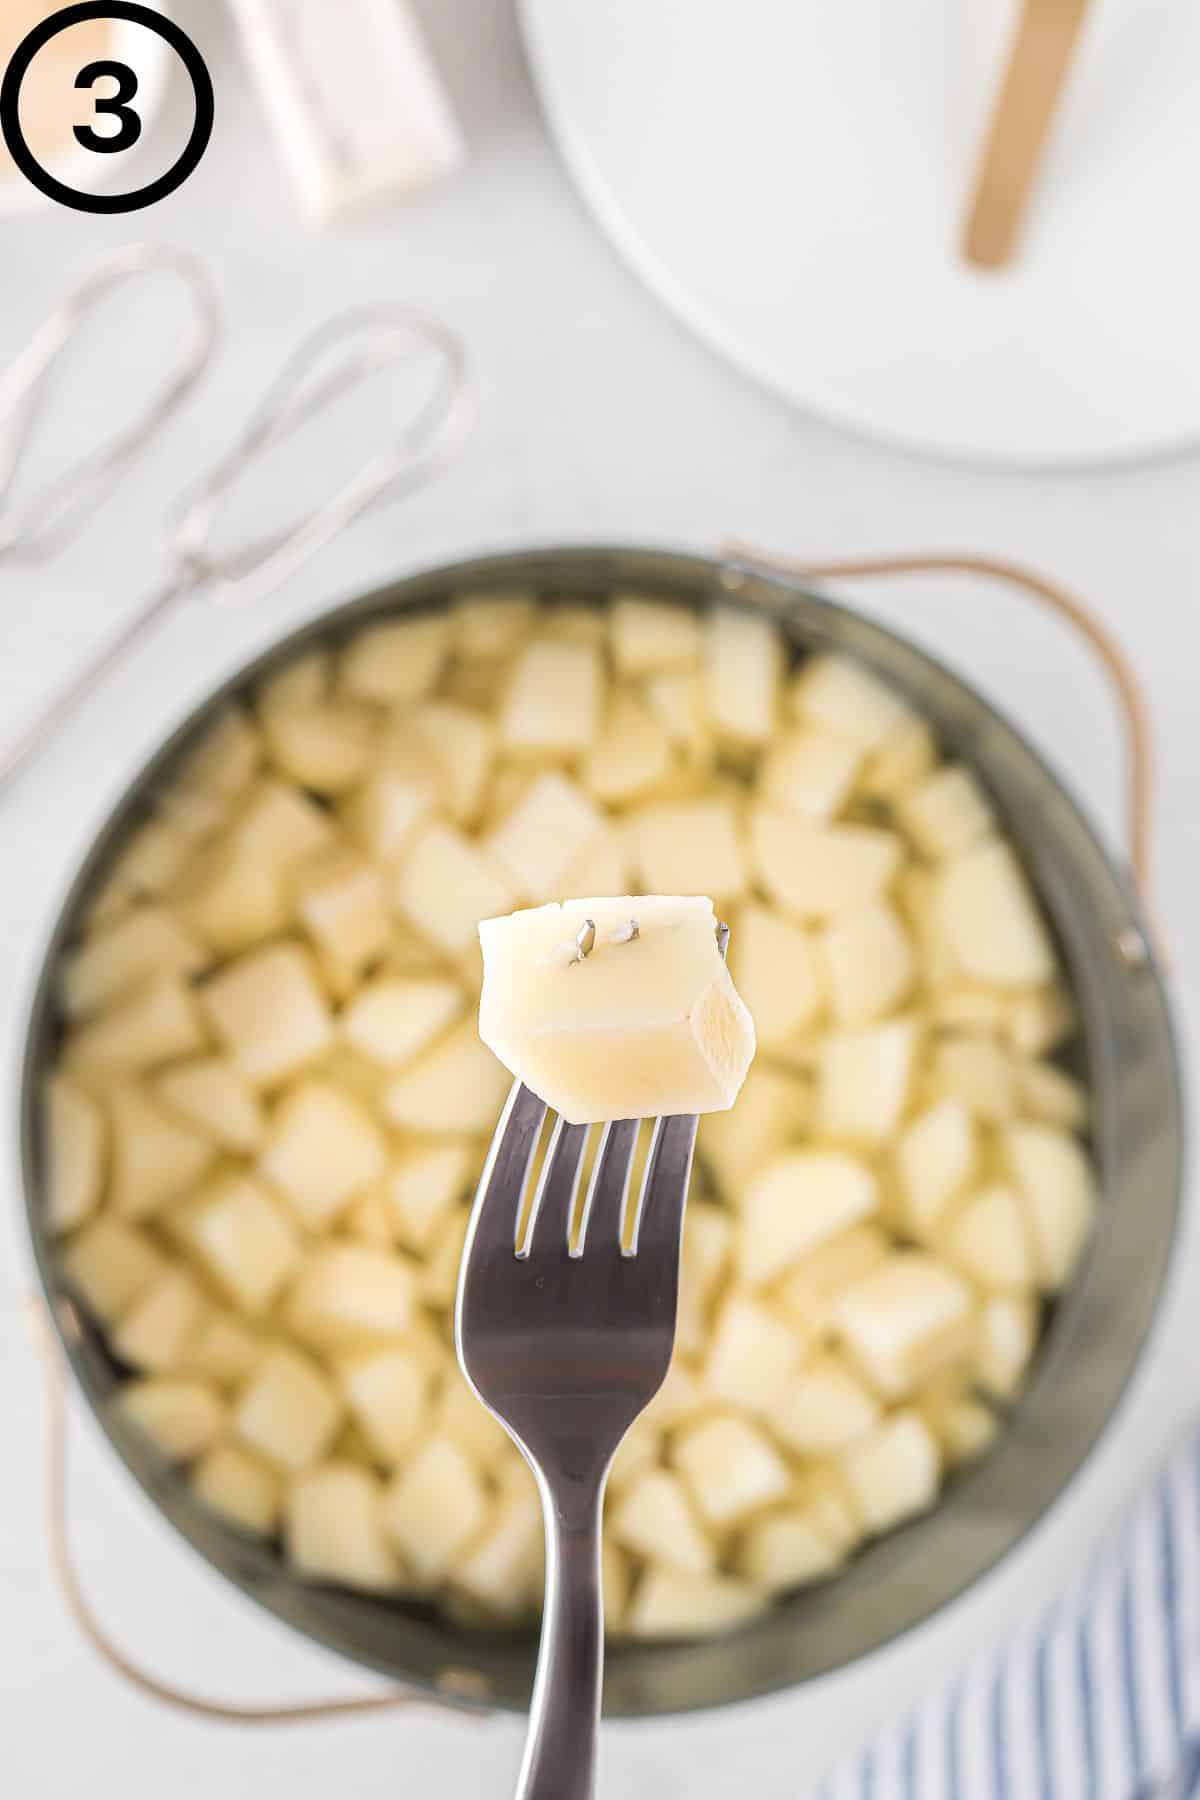 A fork poking through a tender potato.